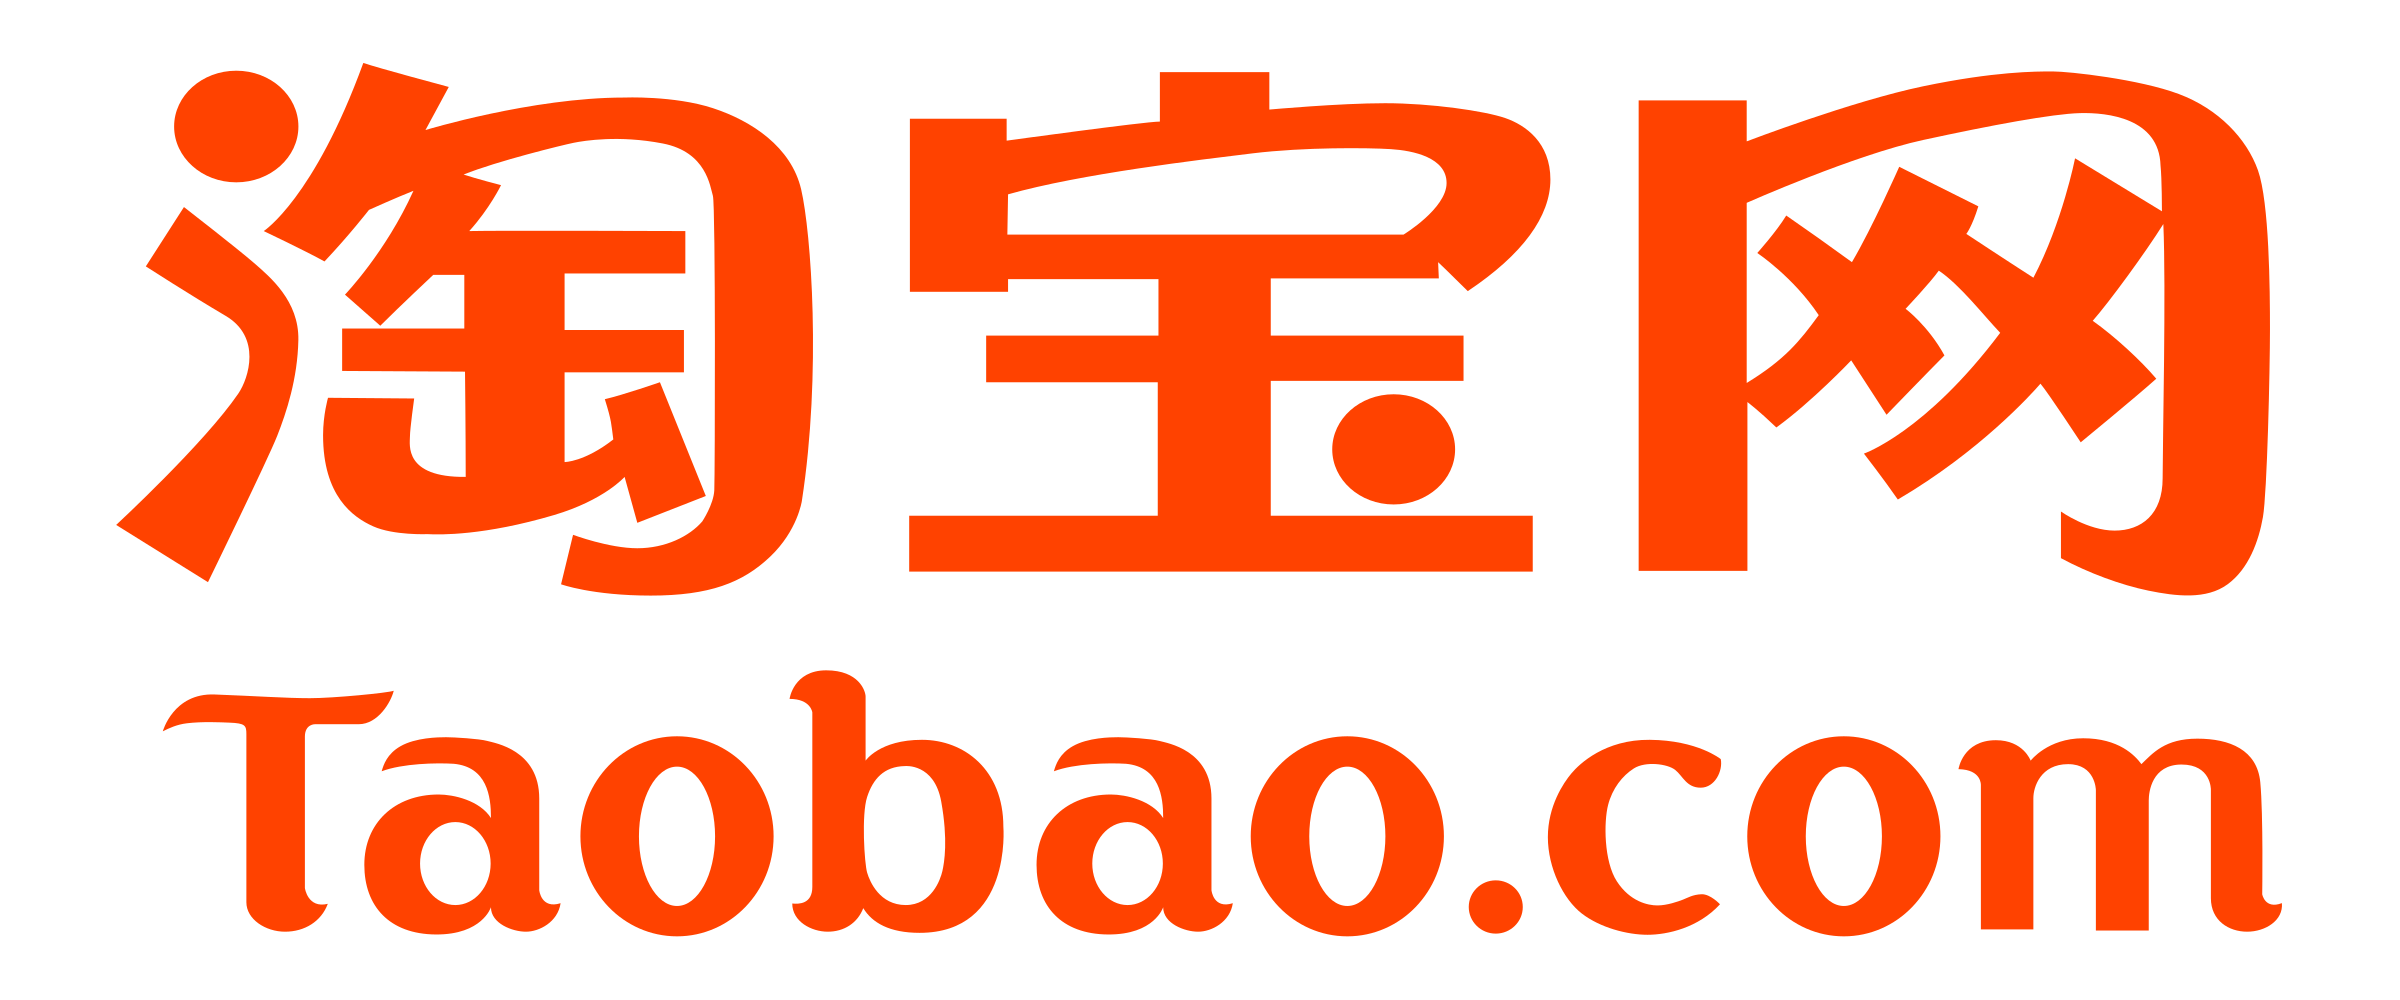 Logo of Taobao pluspng.com